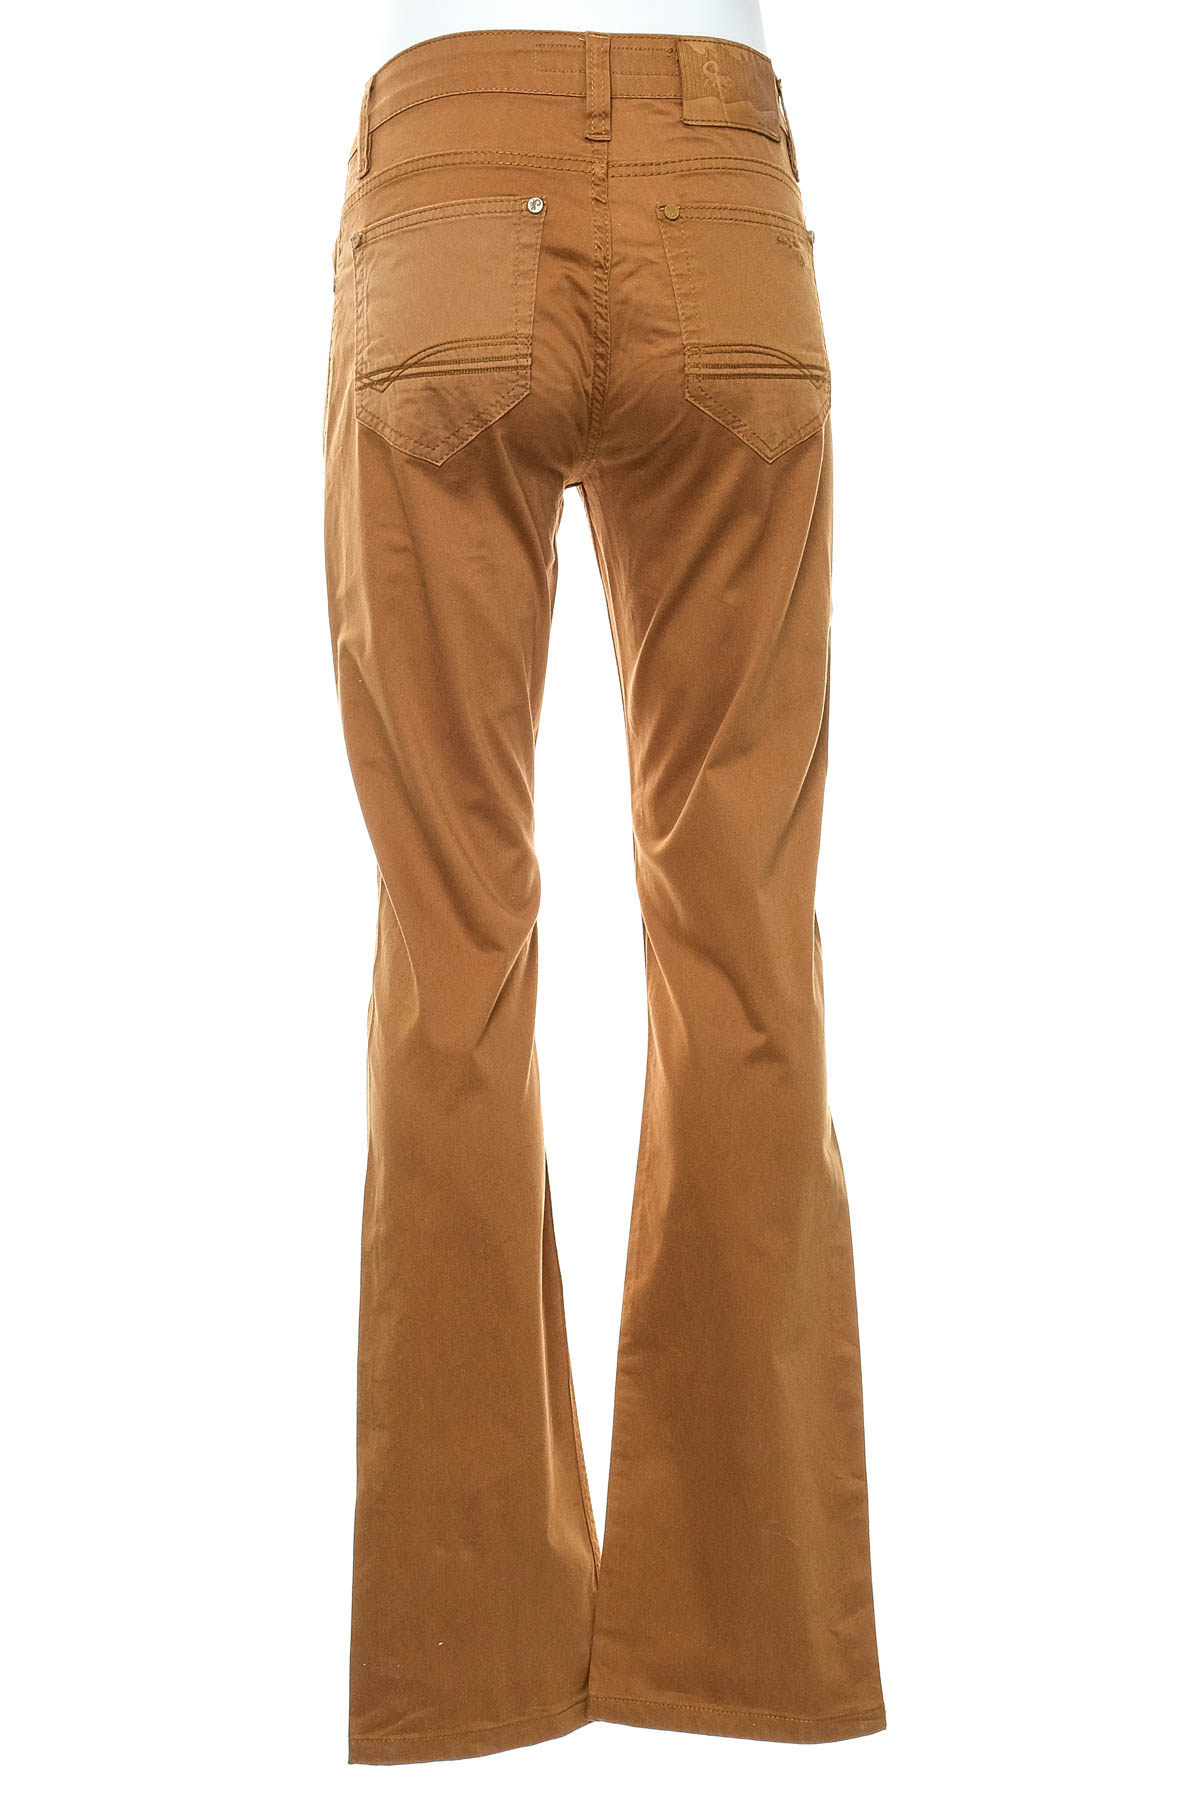 Pantalon pentru bărbați - Sete Jeans - 1